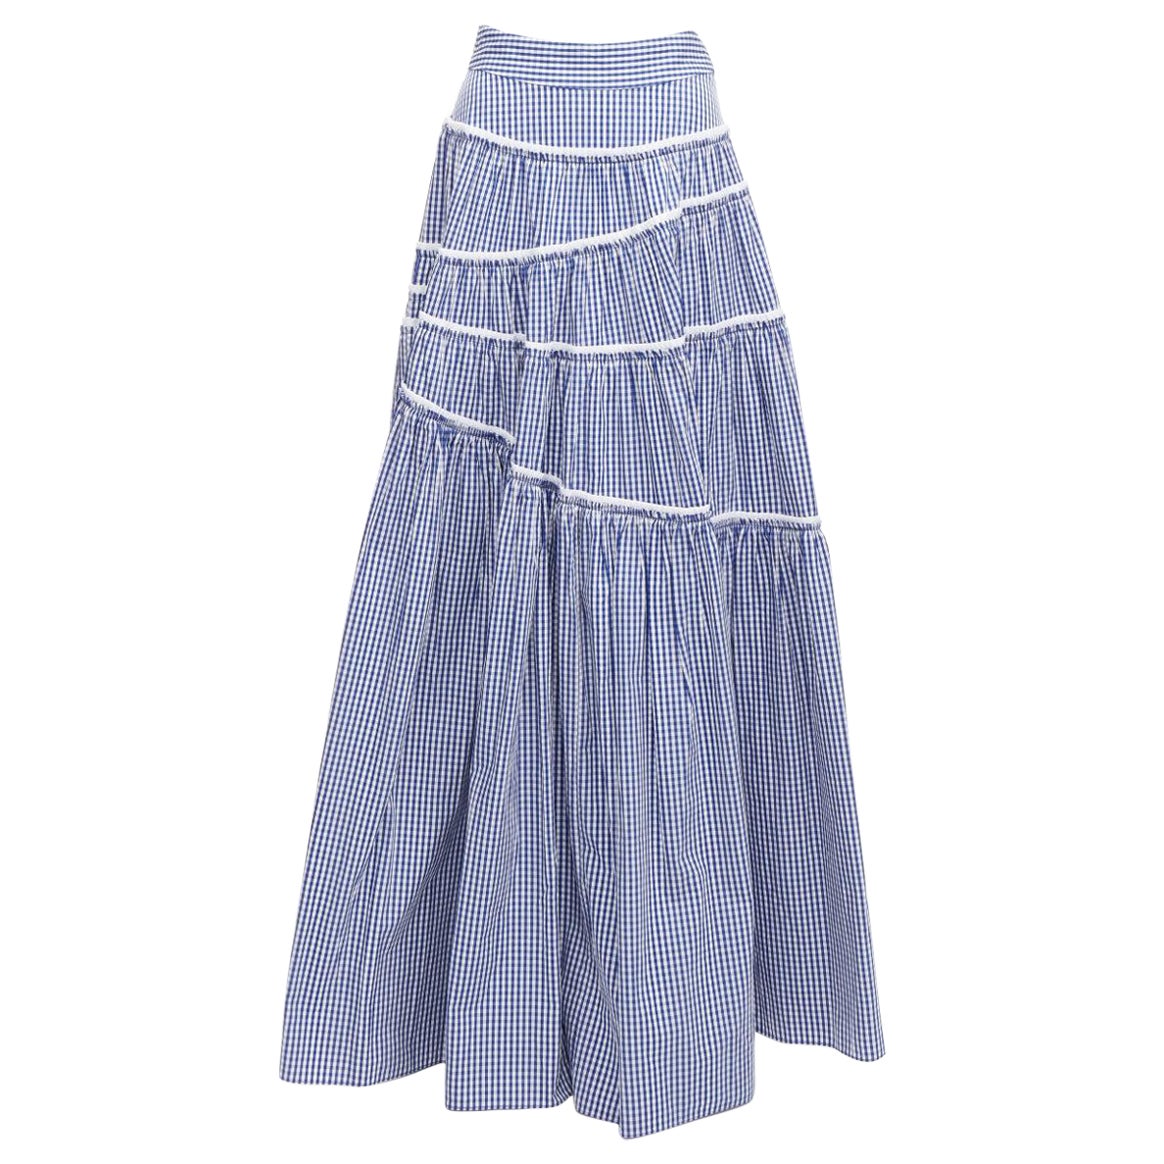 ANAIS JOURDEN Gingham print tiered ruffle seam high waist maxi skirt FR36 S For Sale